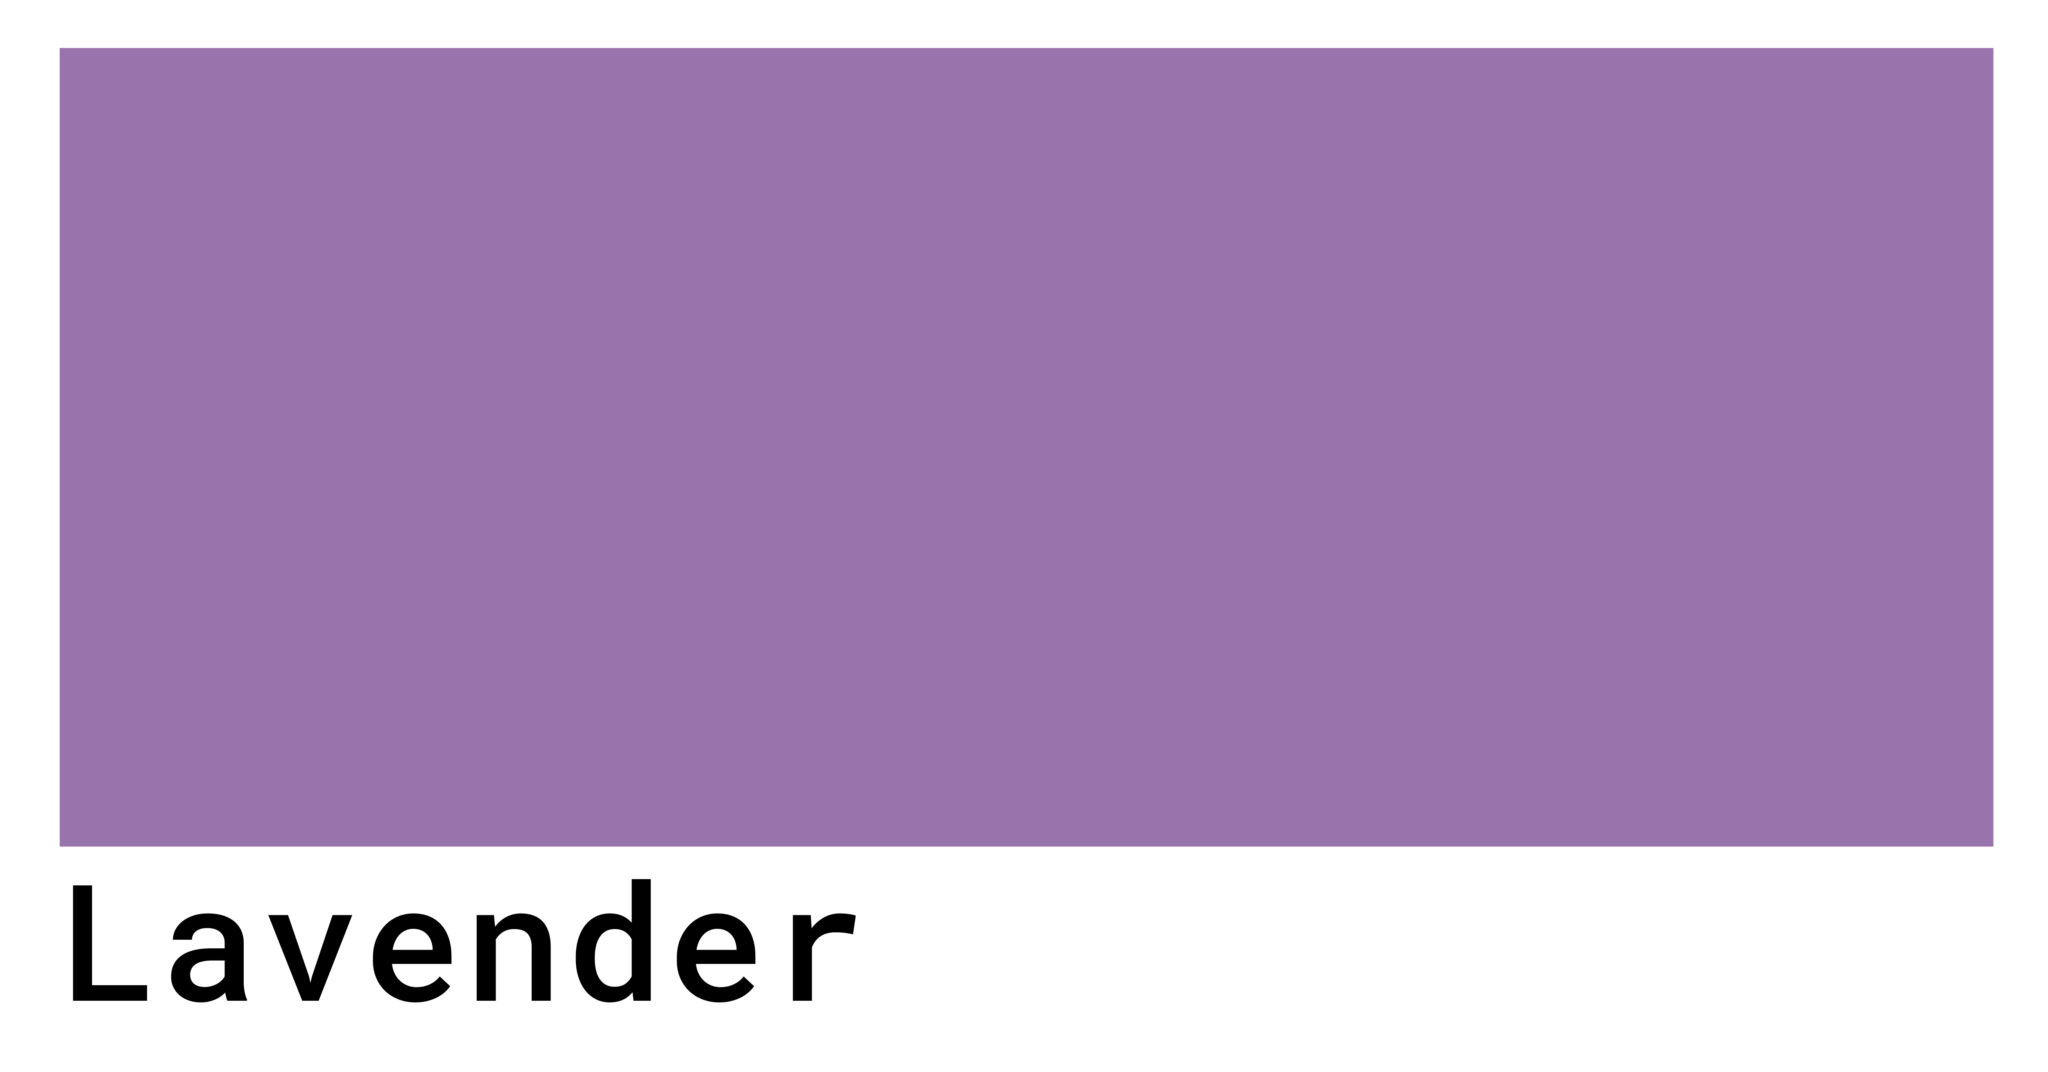 Soft lavender - wide 4